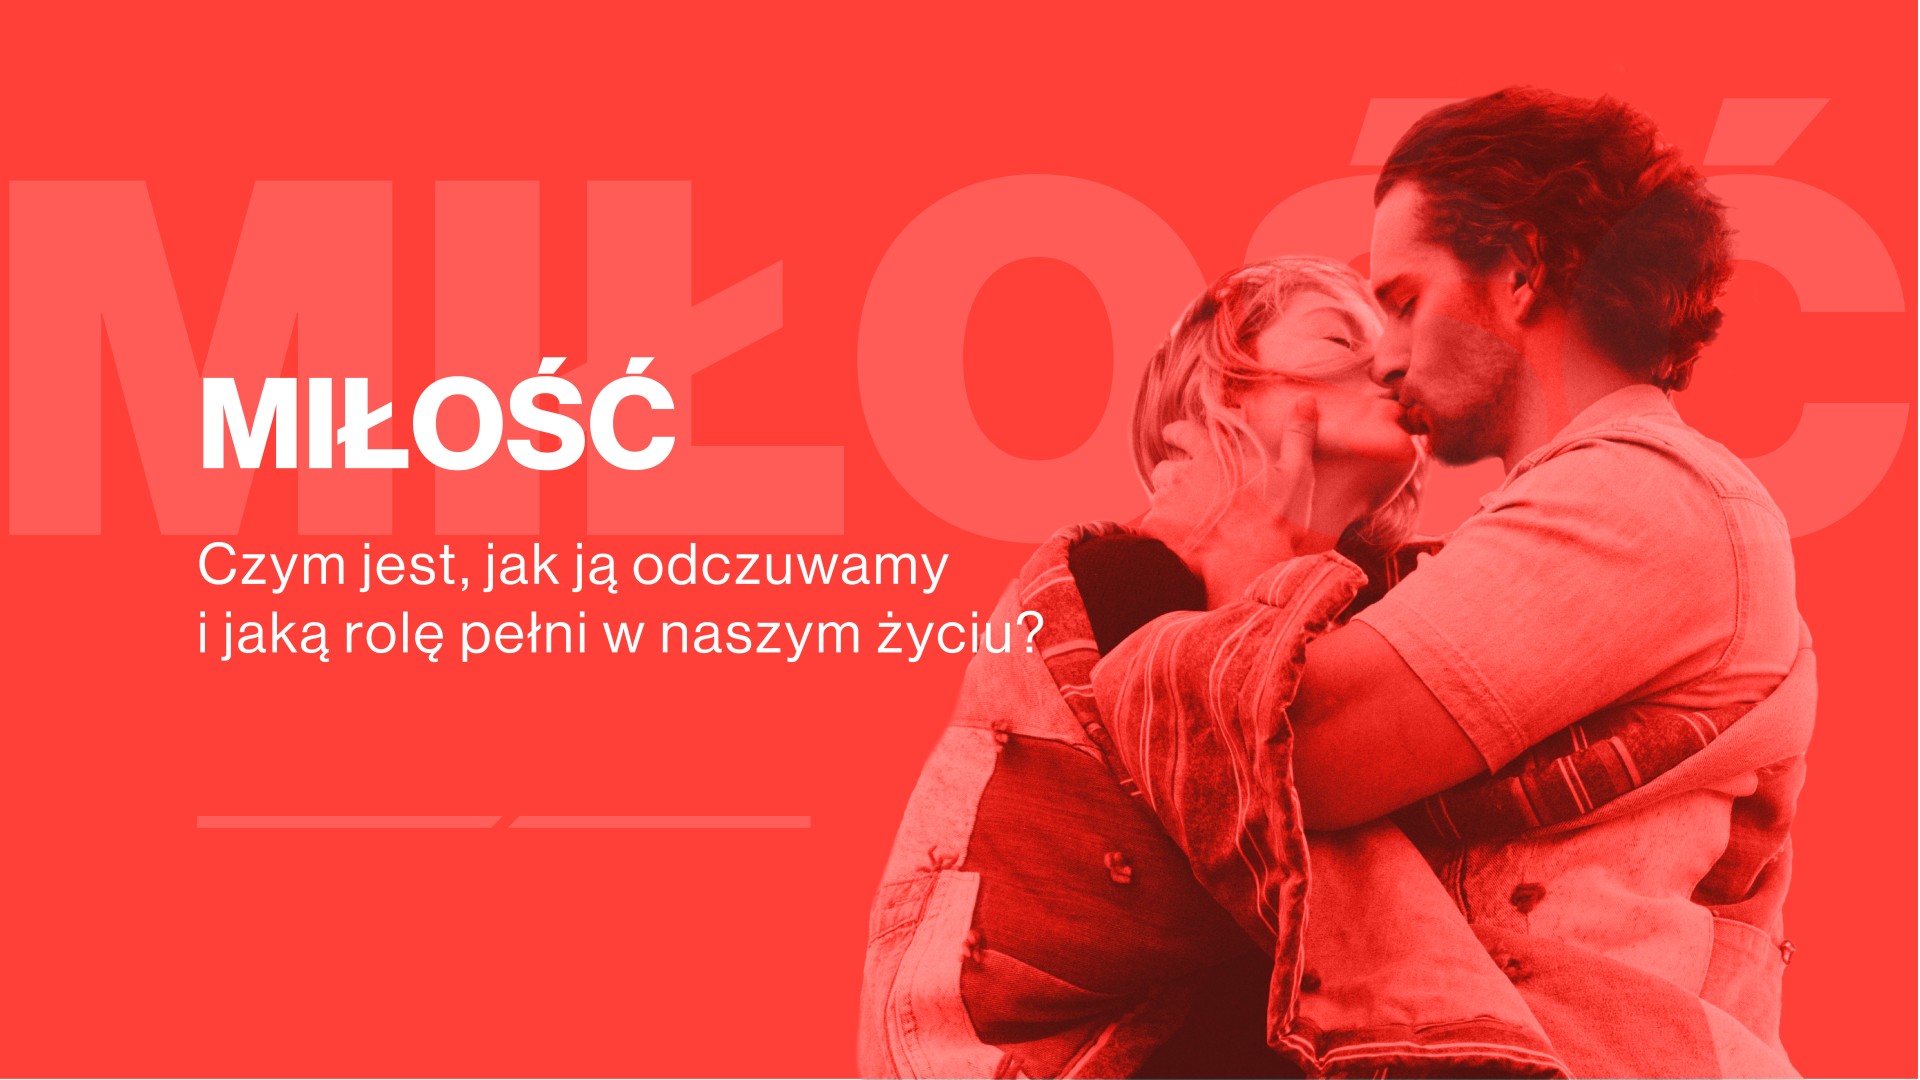 Jak kochają Polacy? dane statystyczne, infografiki o